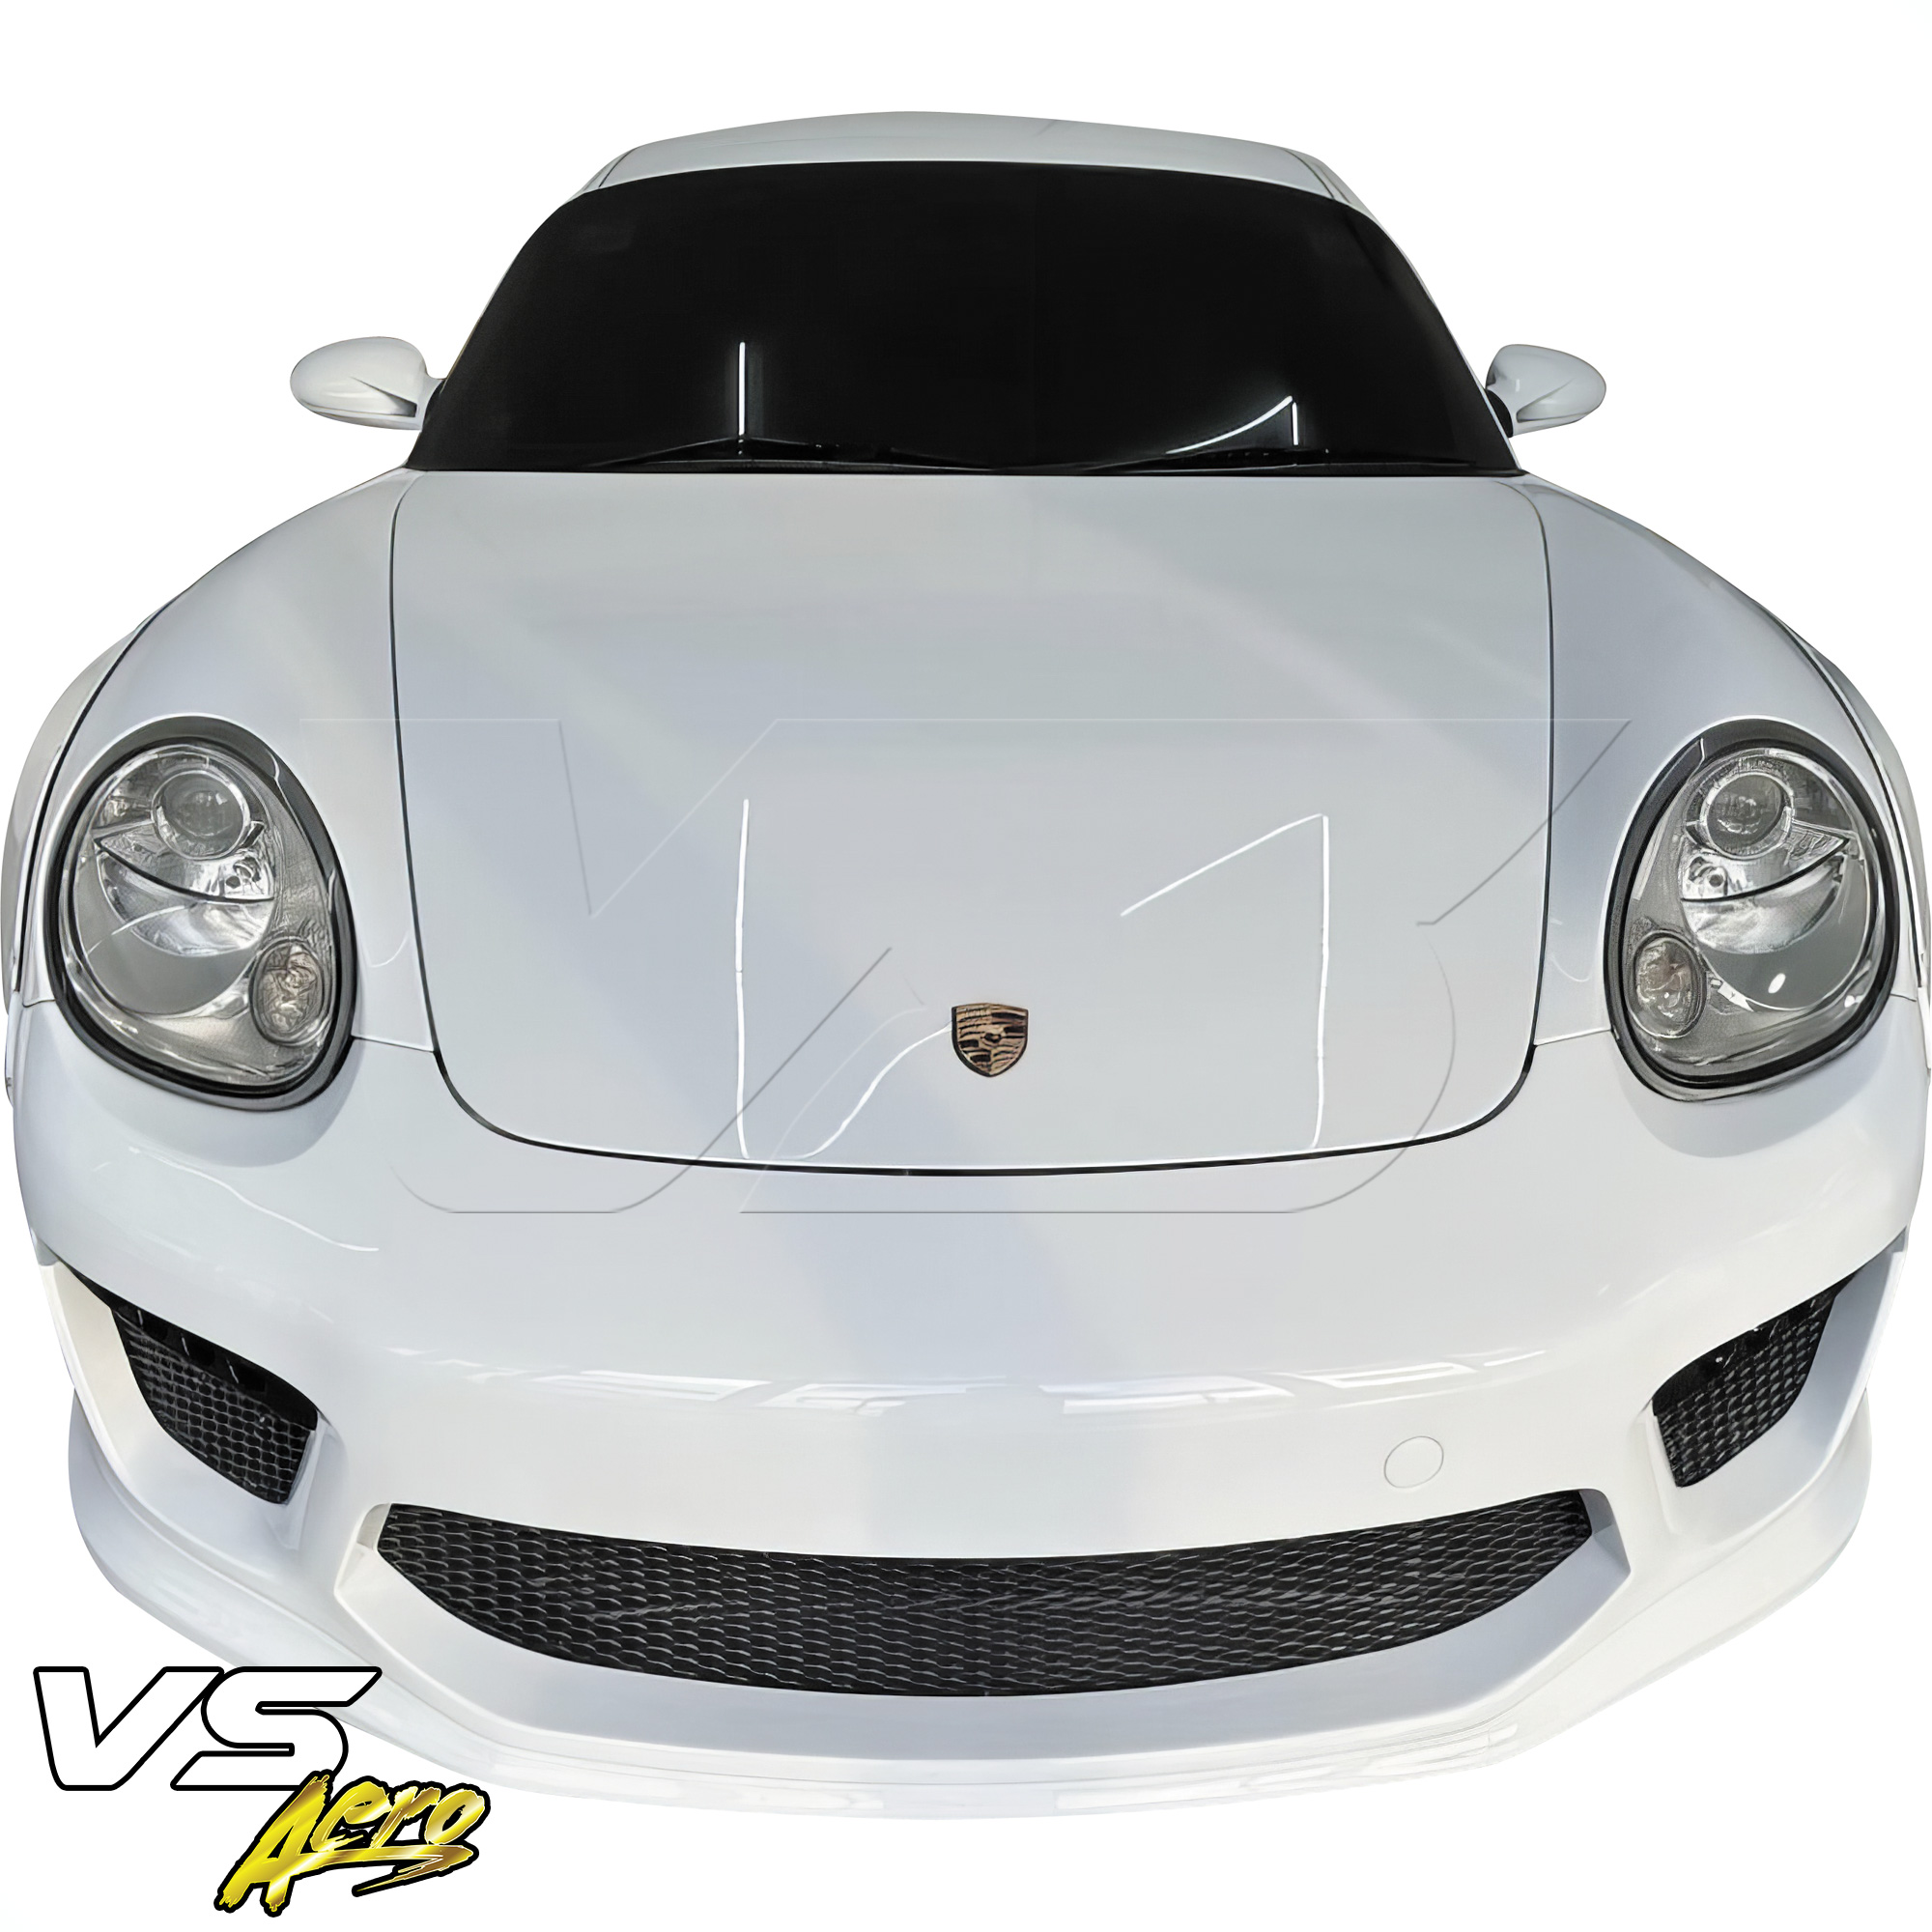 VSaero FRP TKYO v2 Wide Body Front Bumper 3pc > Porsche Cayman 987 2006-2008 - Image 18